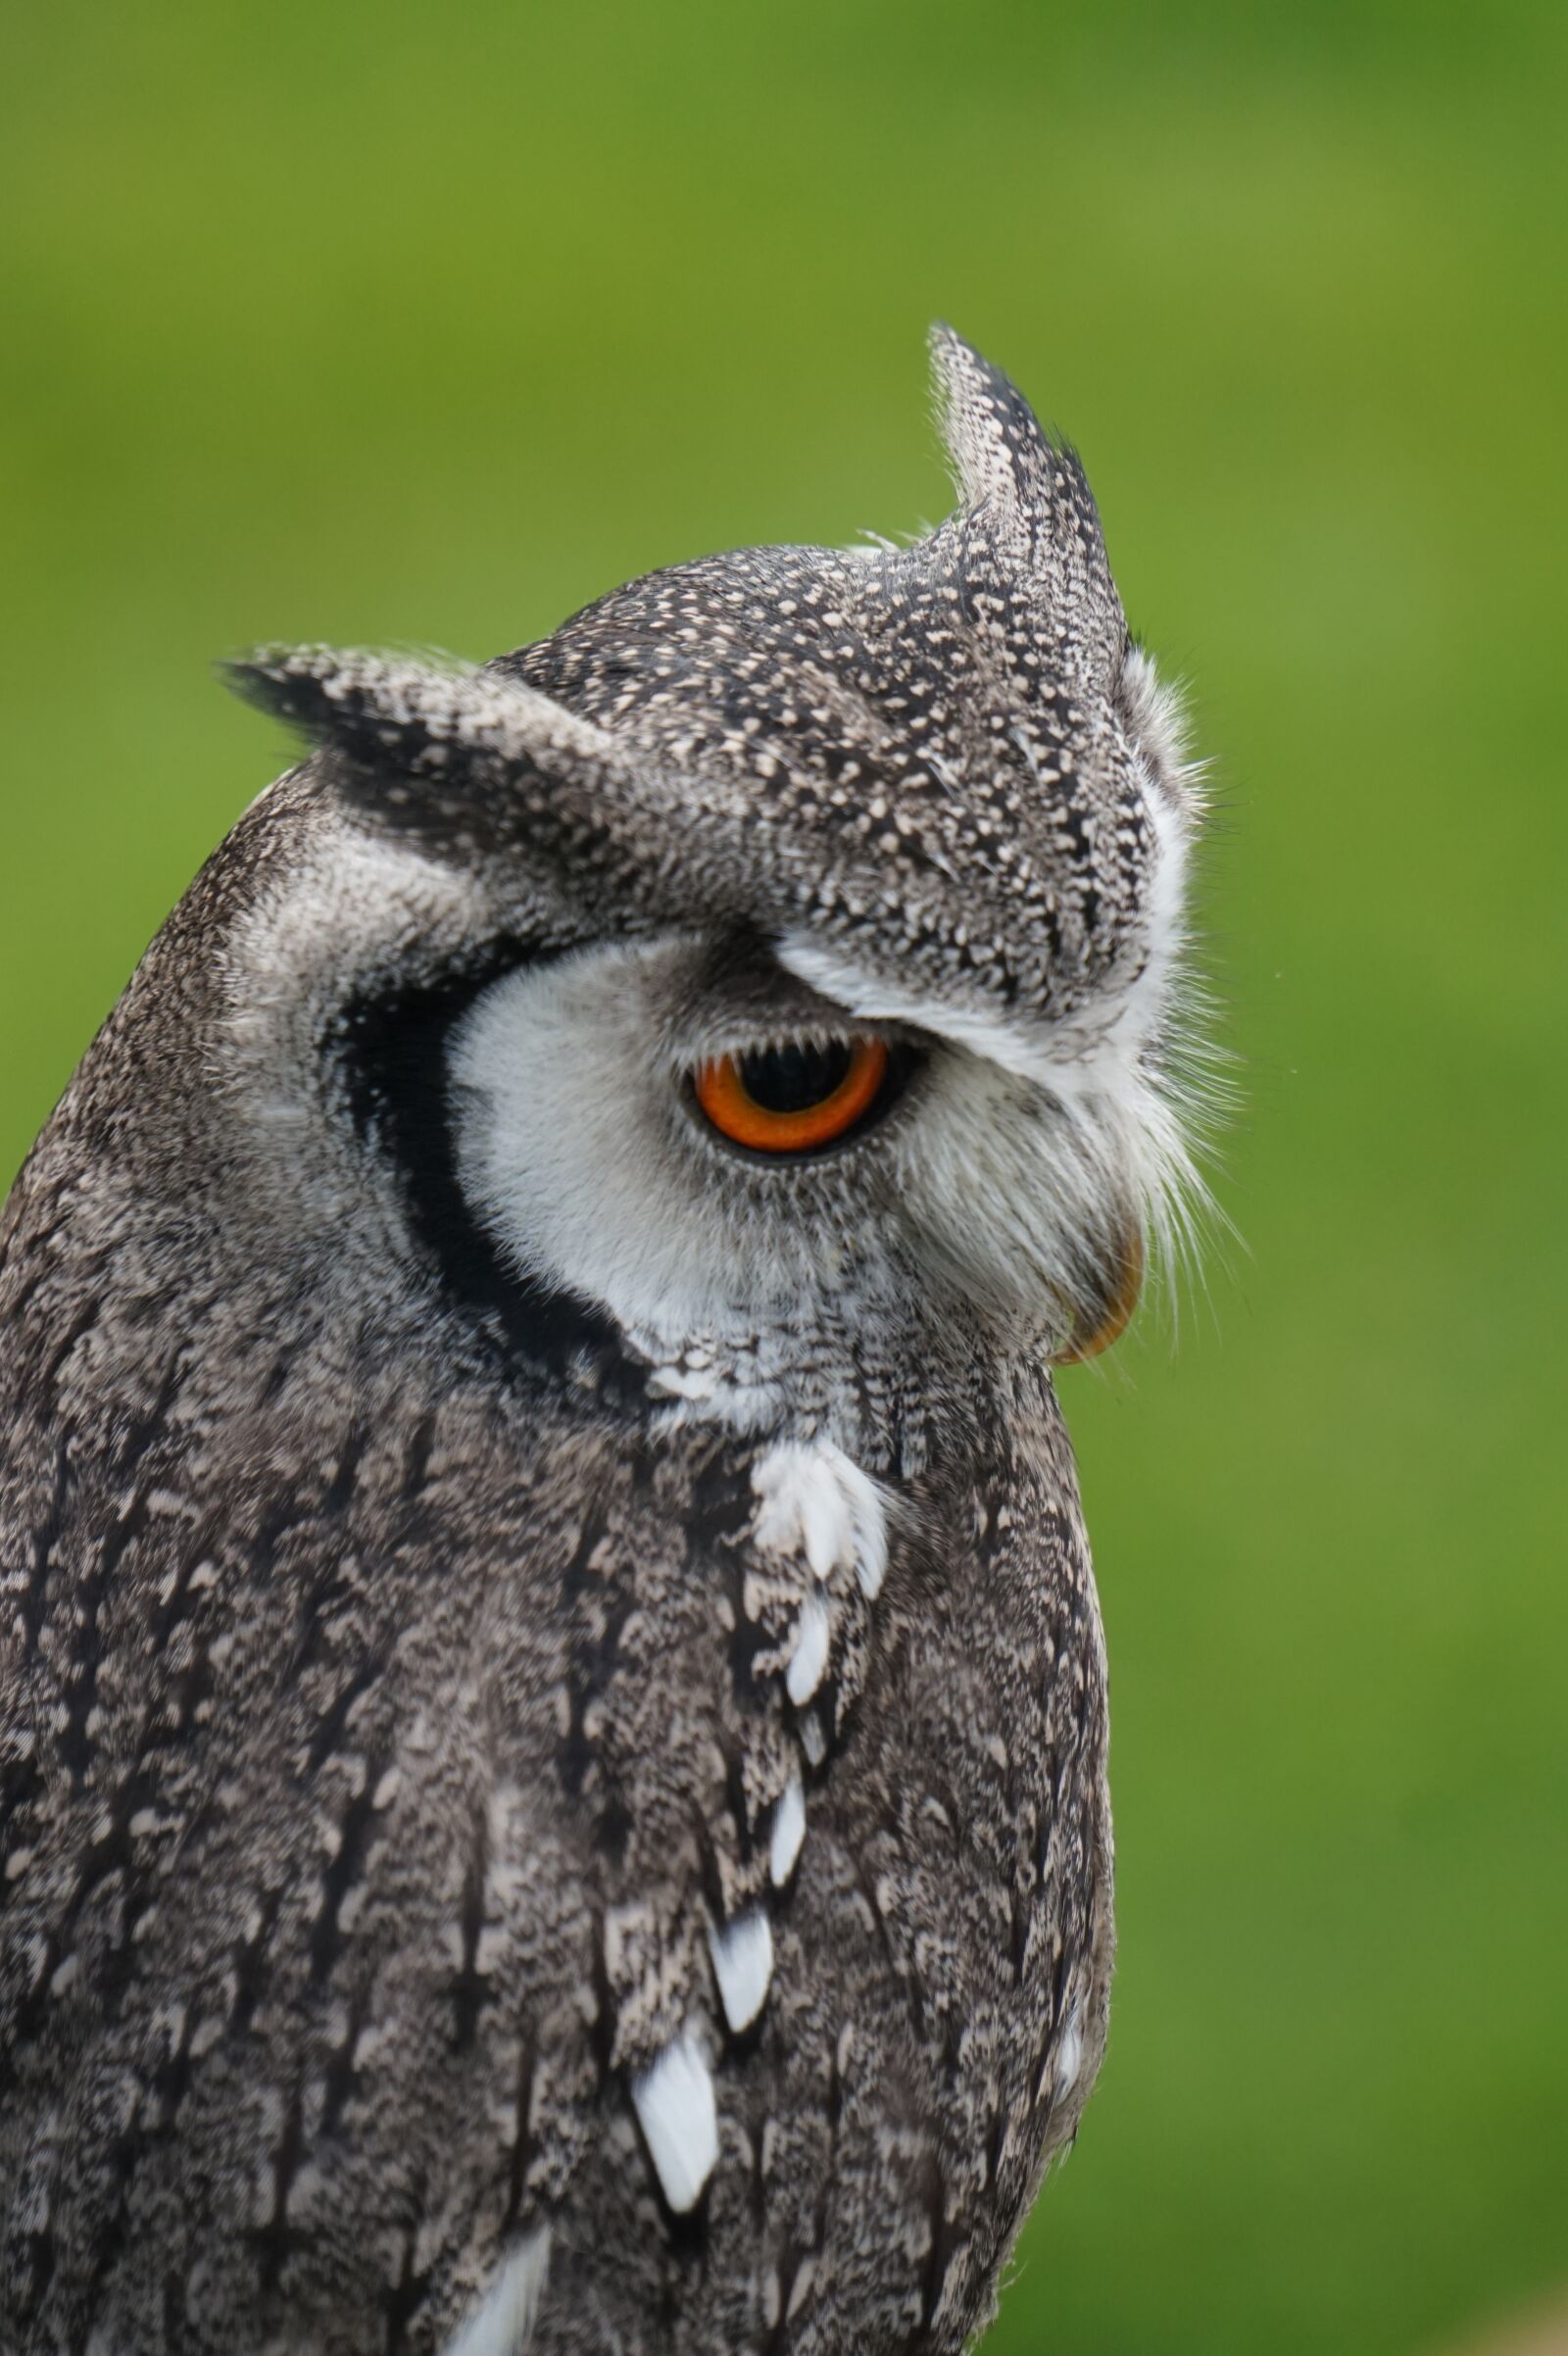 Sony E 18-200mm F3.5-6.3 OSS sample photo. Owl, bird, head owl photography